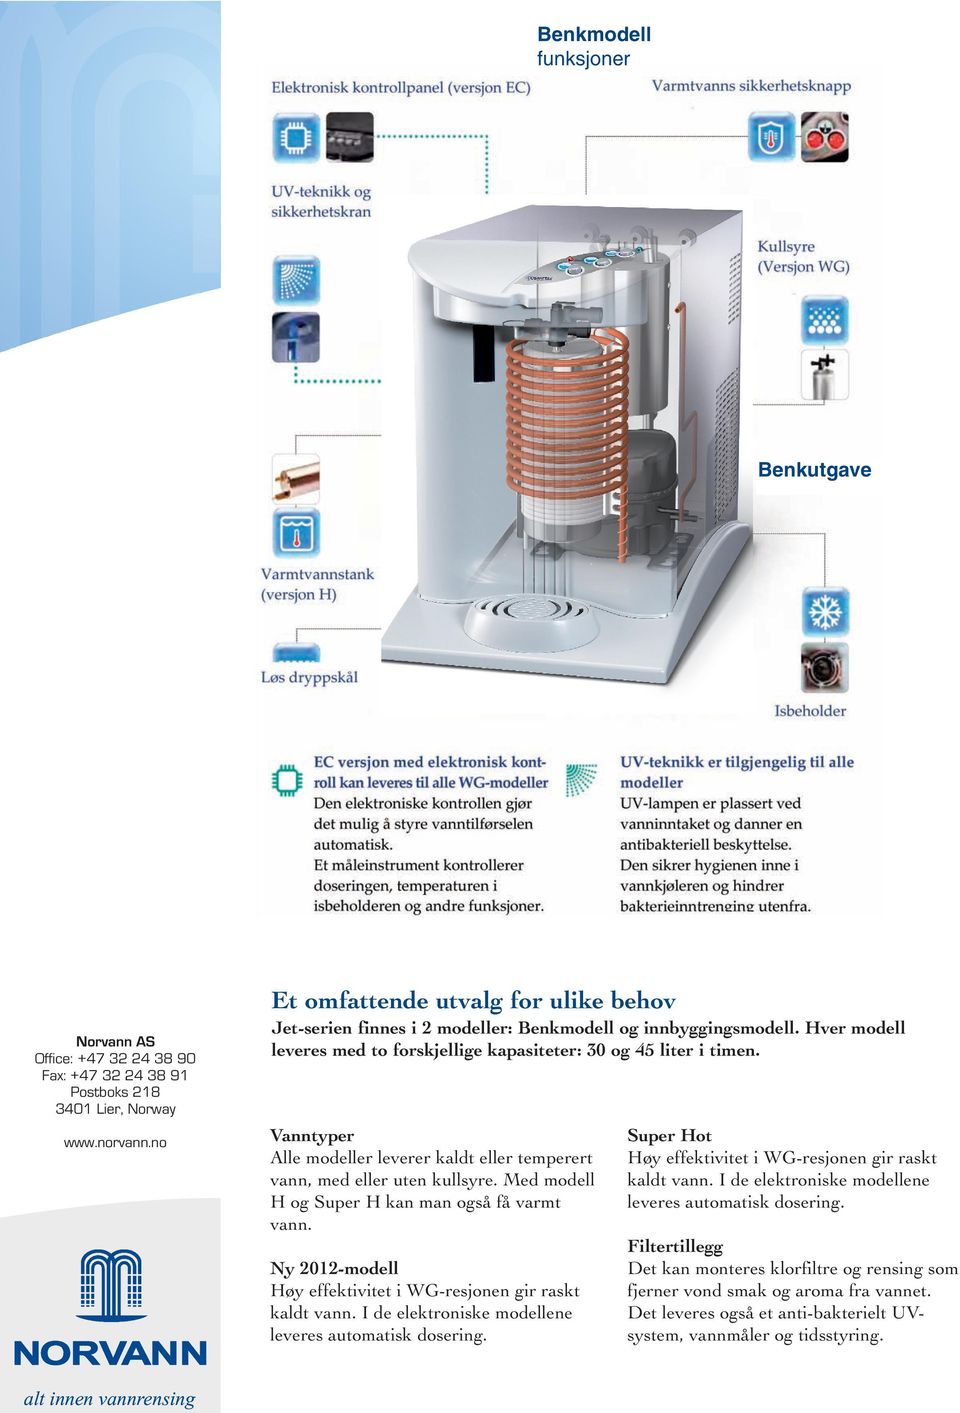 Med modell H og Super H kan man også få varmt vann. Ny 2012-modell Høy effektivitet i WG-resjonen gir raskt kaldt vann. I de elektroniske modellene leveres automatisk doseri.